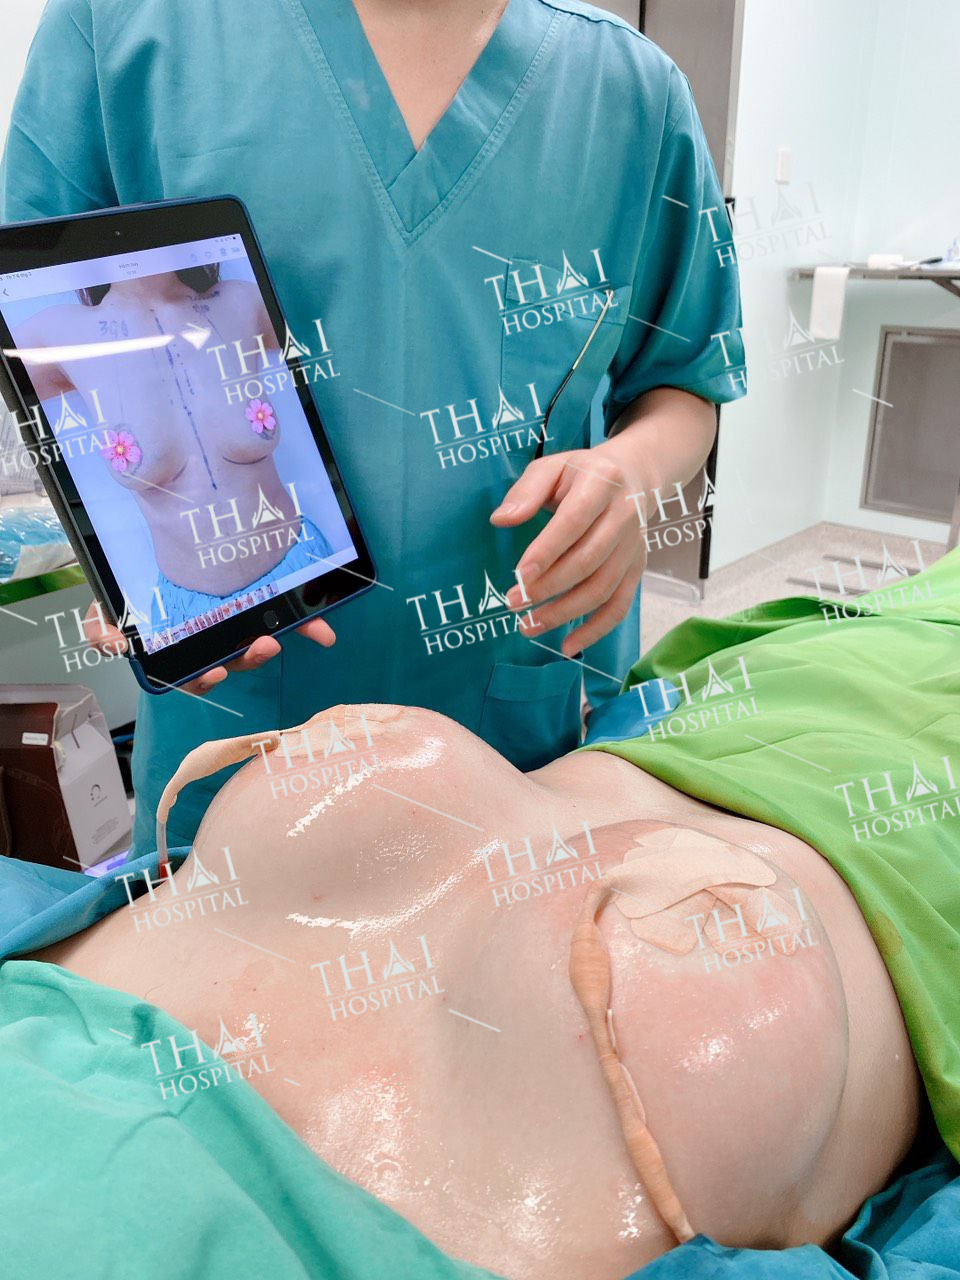 Sở hữu vòng 1 đẹp như mơ sau khi tiến hành nâng ngực sửa túi tại THAI Hospital